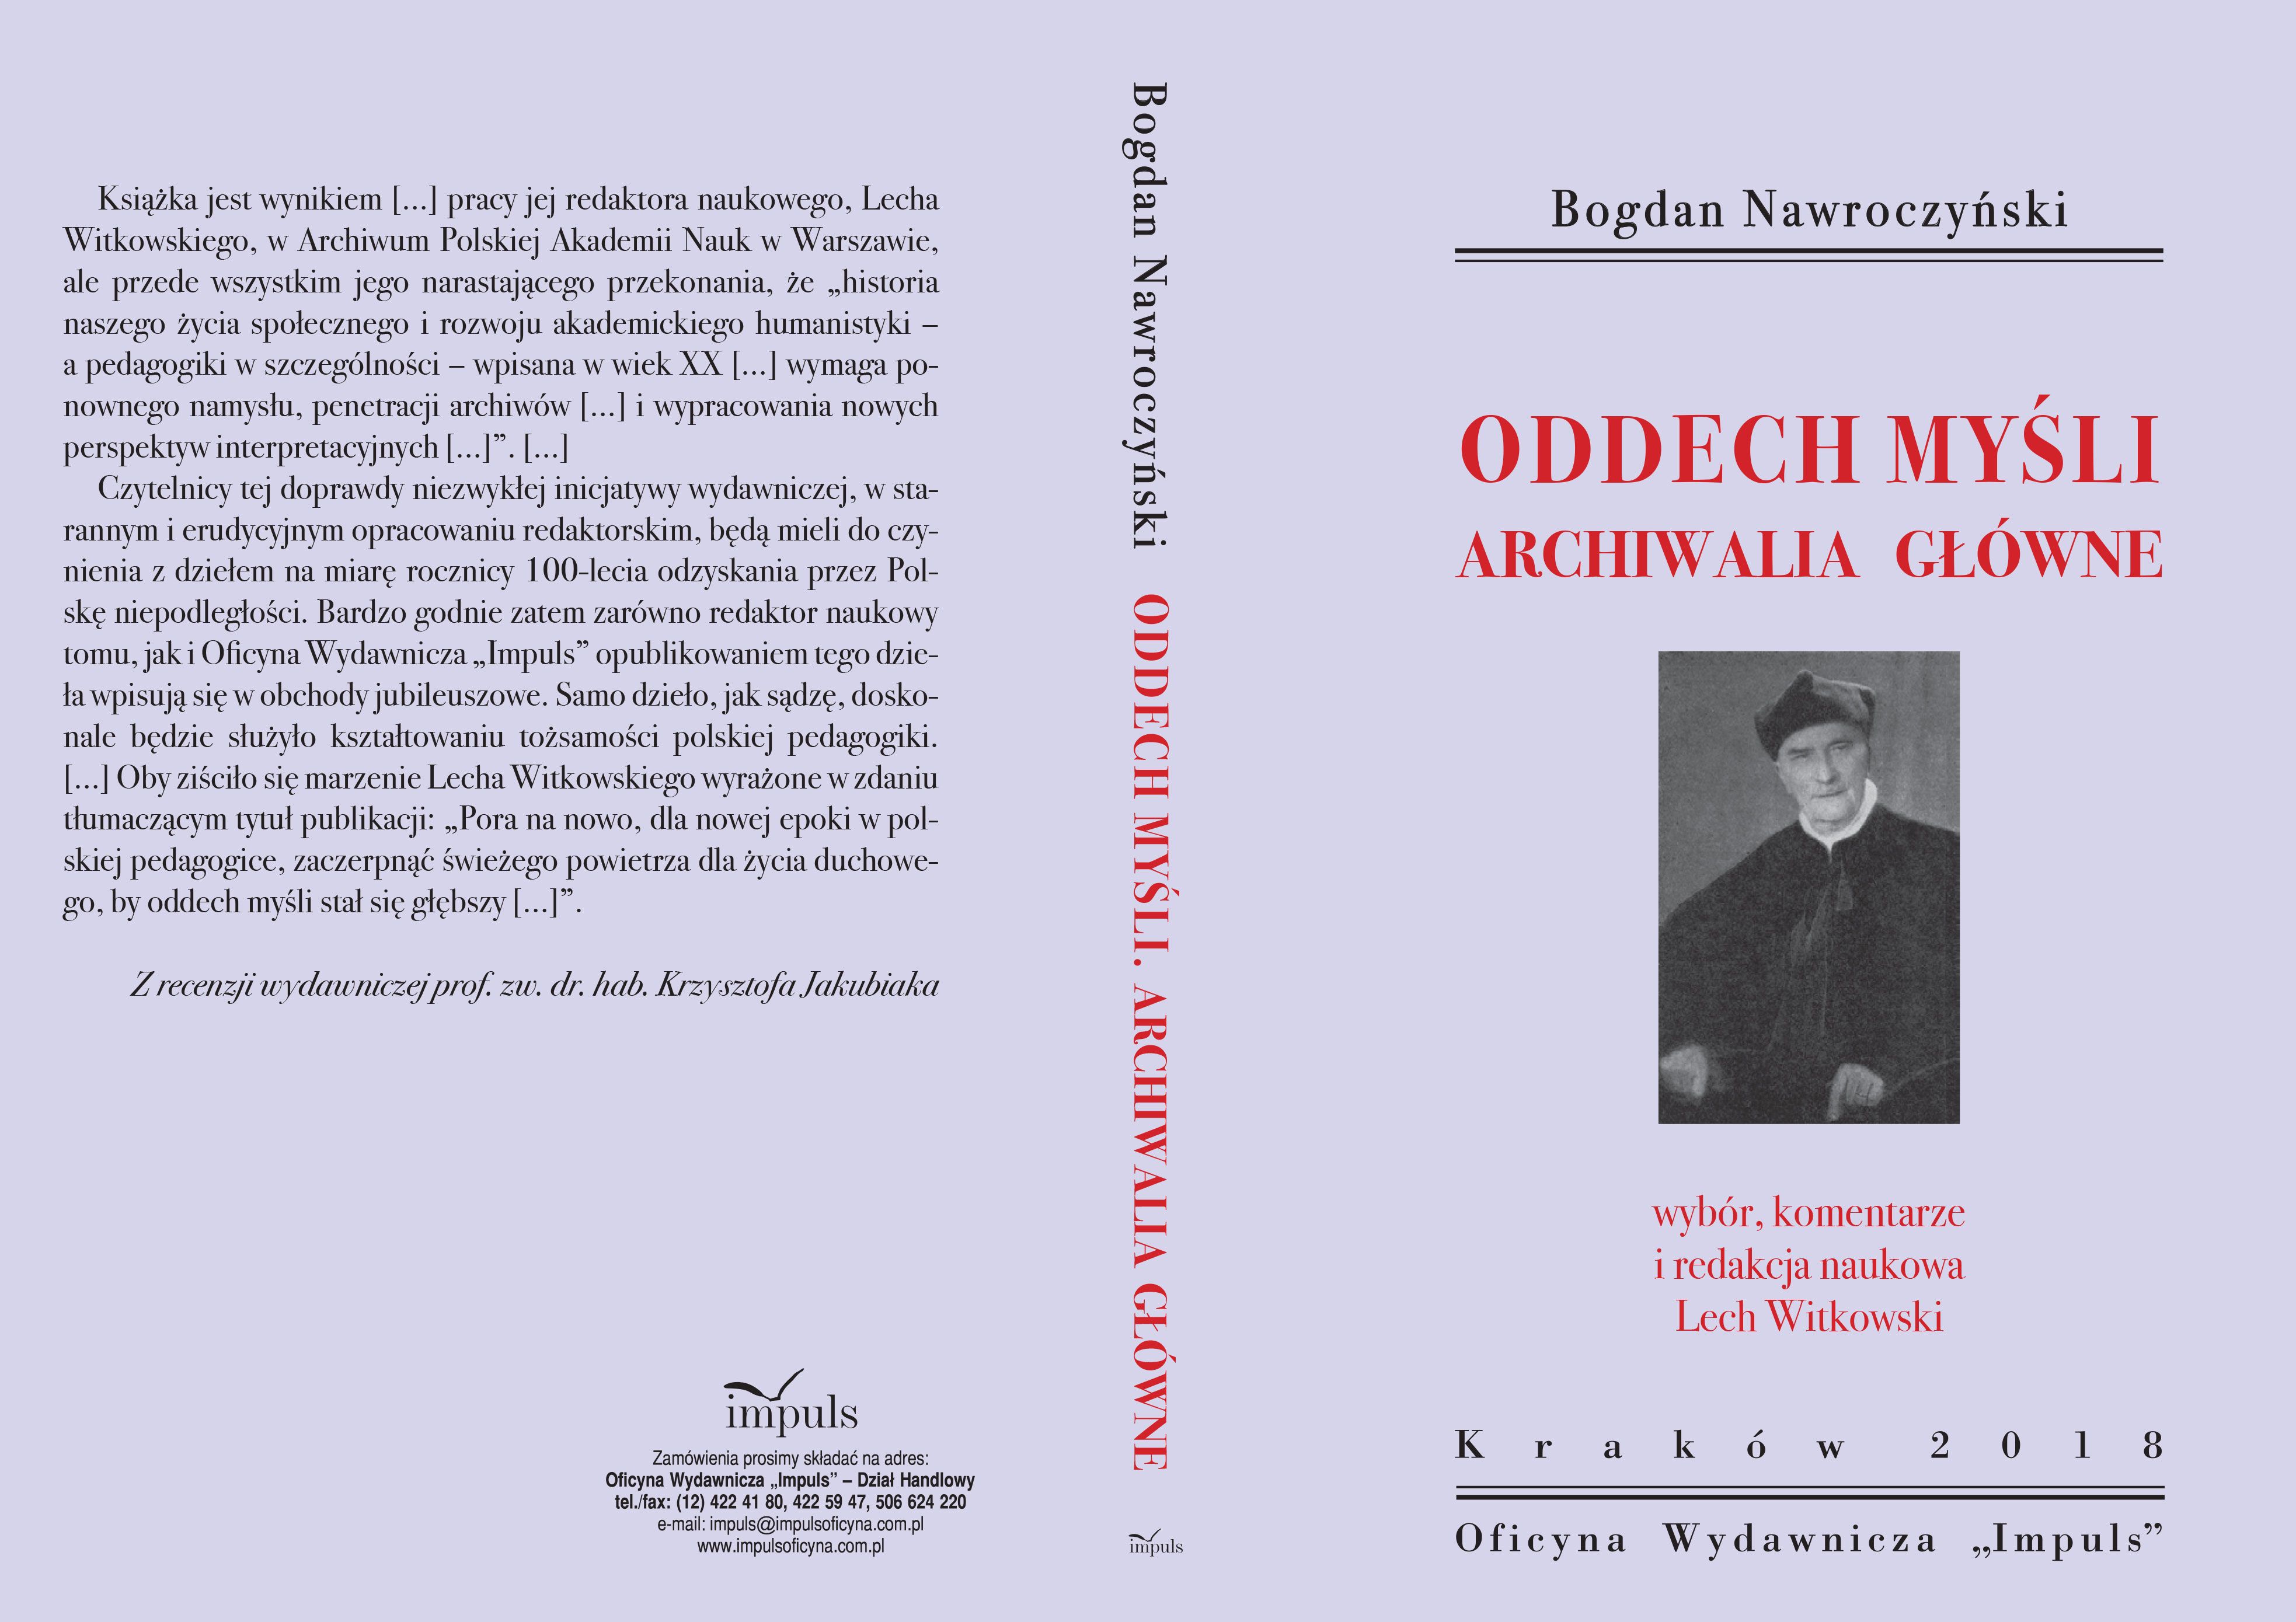  "Oddech myśli. Archiwalia główne", Bogdan Nawroczyński